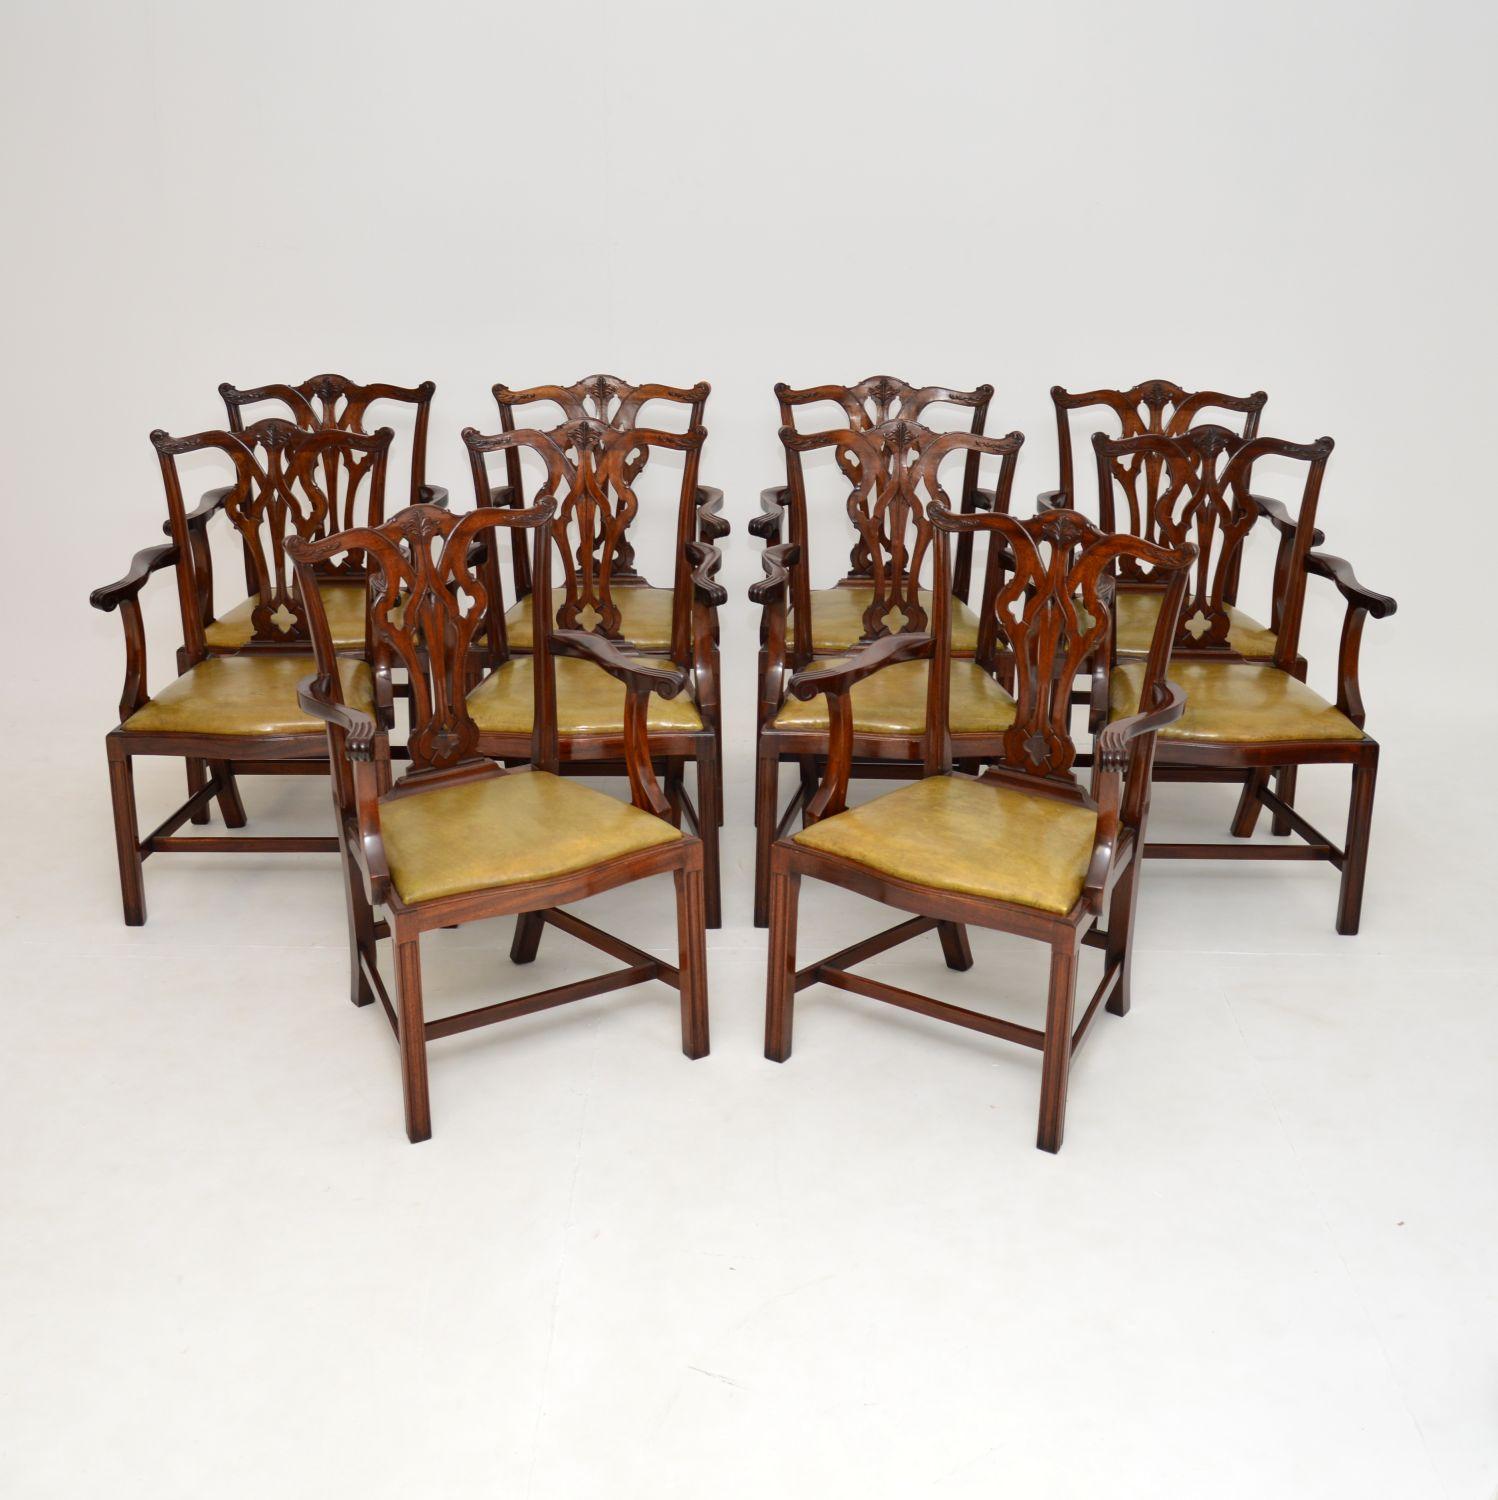 Magnifique ensemble de 10 chaises de salle à manger anciennes de style Chippendale. Ils ont été fabriqués en Angleterre et datent des années 1900-1920.

La qualité est exceptionnelle et il est très rare de trouver un ensemble de dix comme celui-ci,